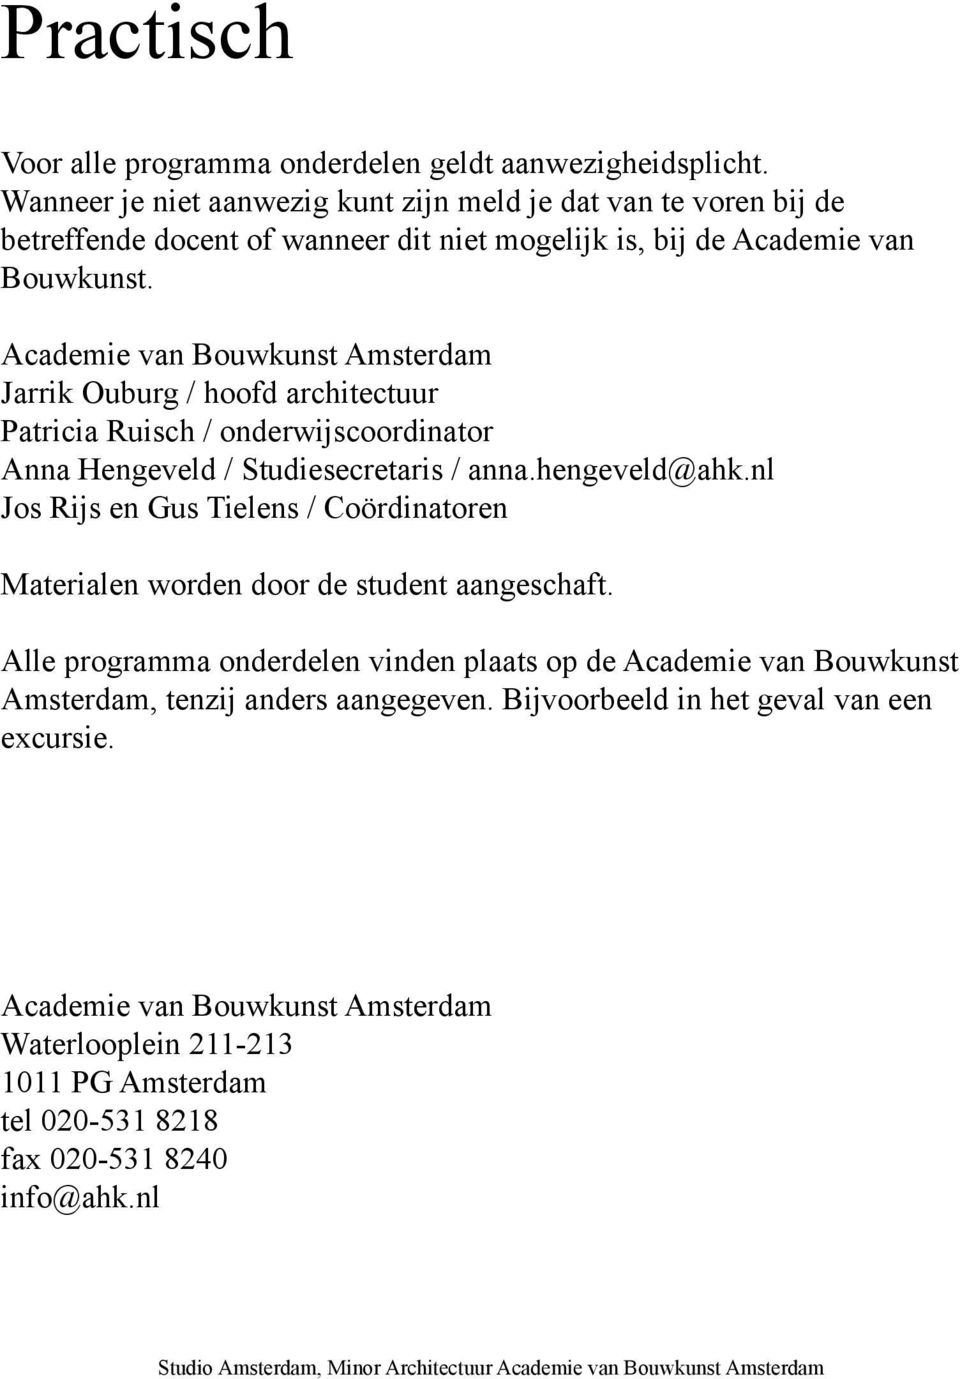 Academie van Bouwkunst Amsterdam Jarrik Ouburg / hoofd architectuur Patricia Ruisch / onderwijscoordinator Anna Hengeveld / Studiesecretaris / anna.hengeveld@ahk.